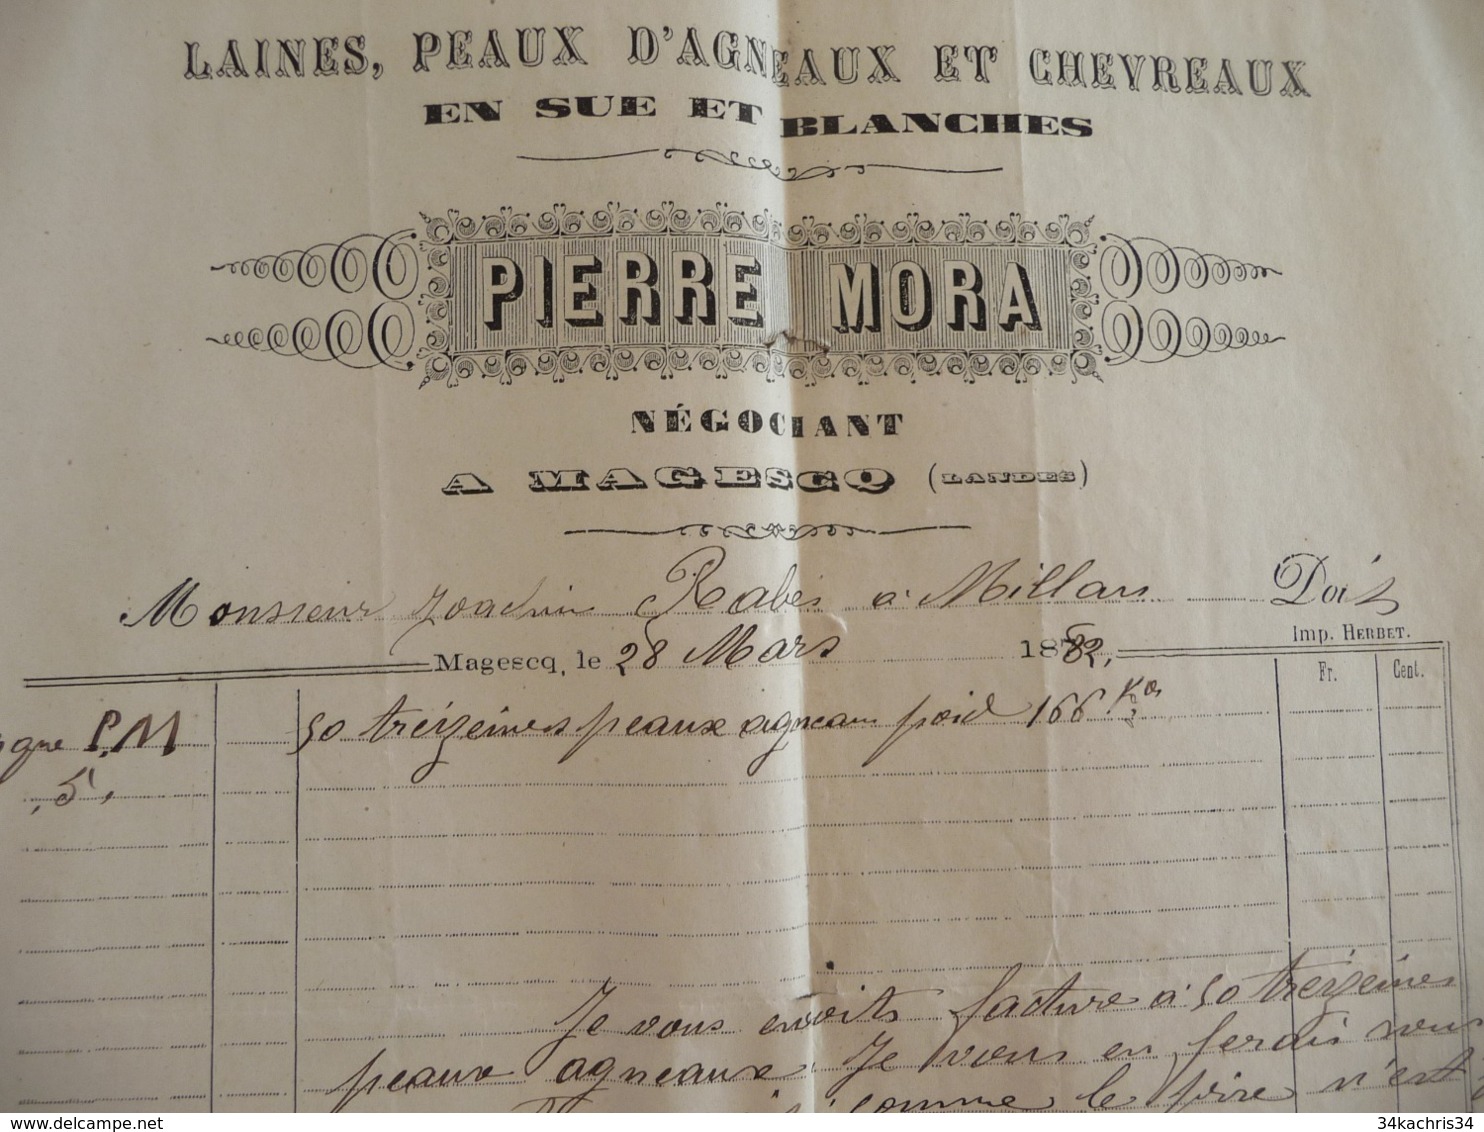 Facture Agriculture Pierre Mora Laines Peaux D'agneau Et Chevreaux 1882 Magesq Landes - Landwirtschaft